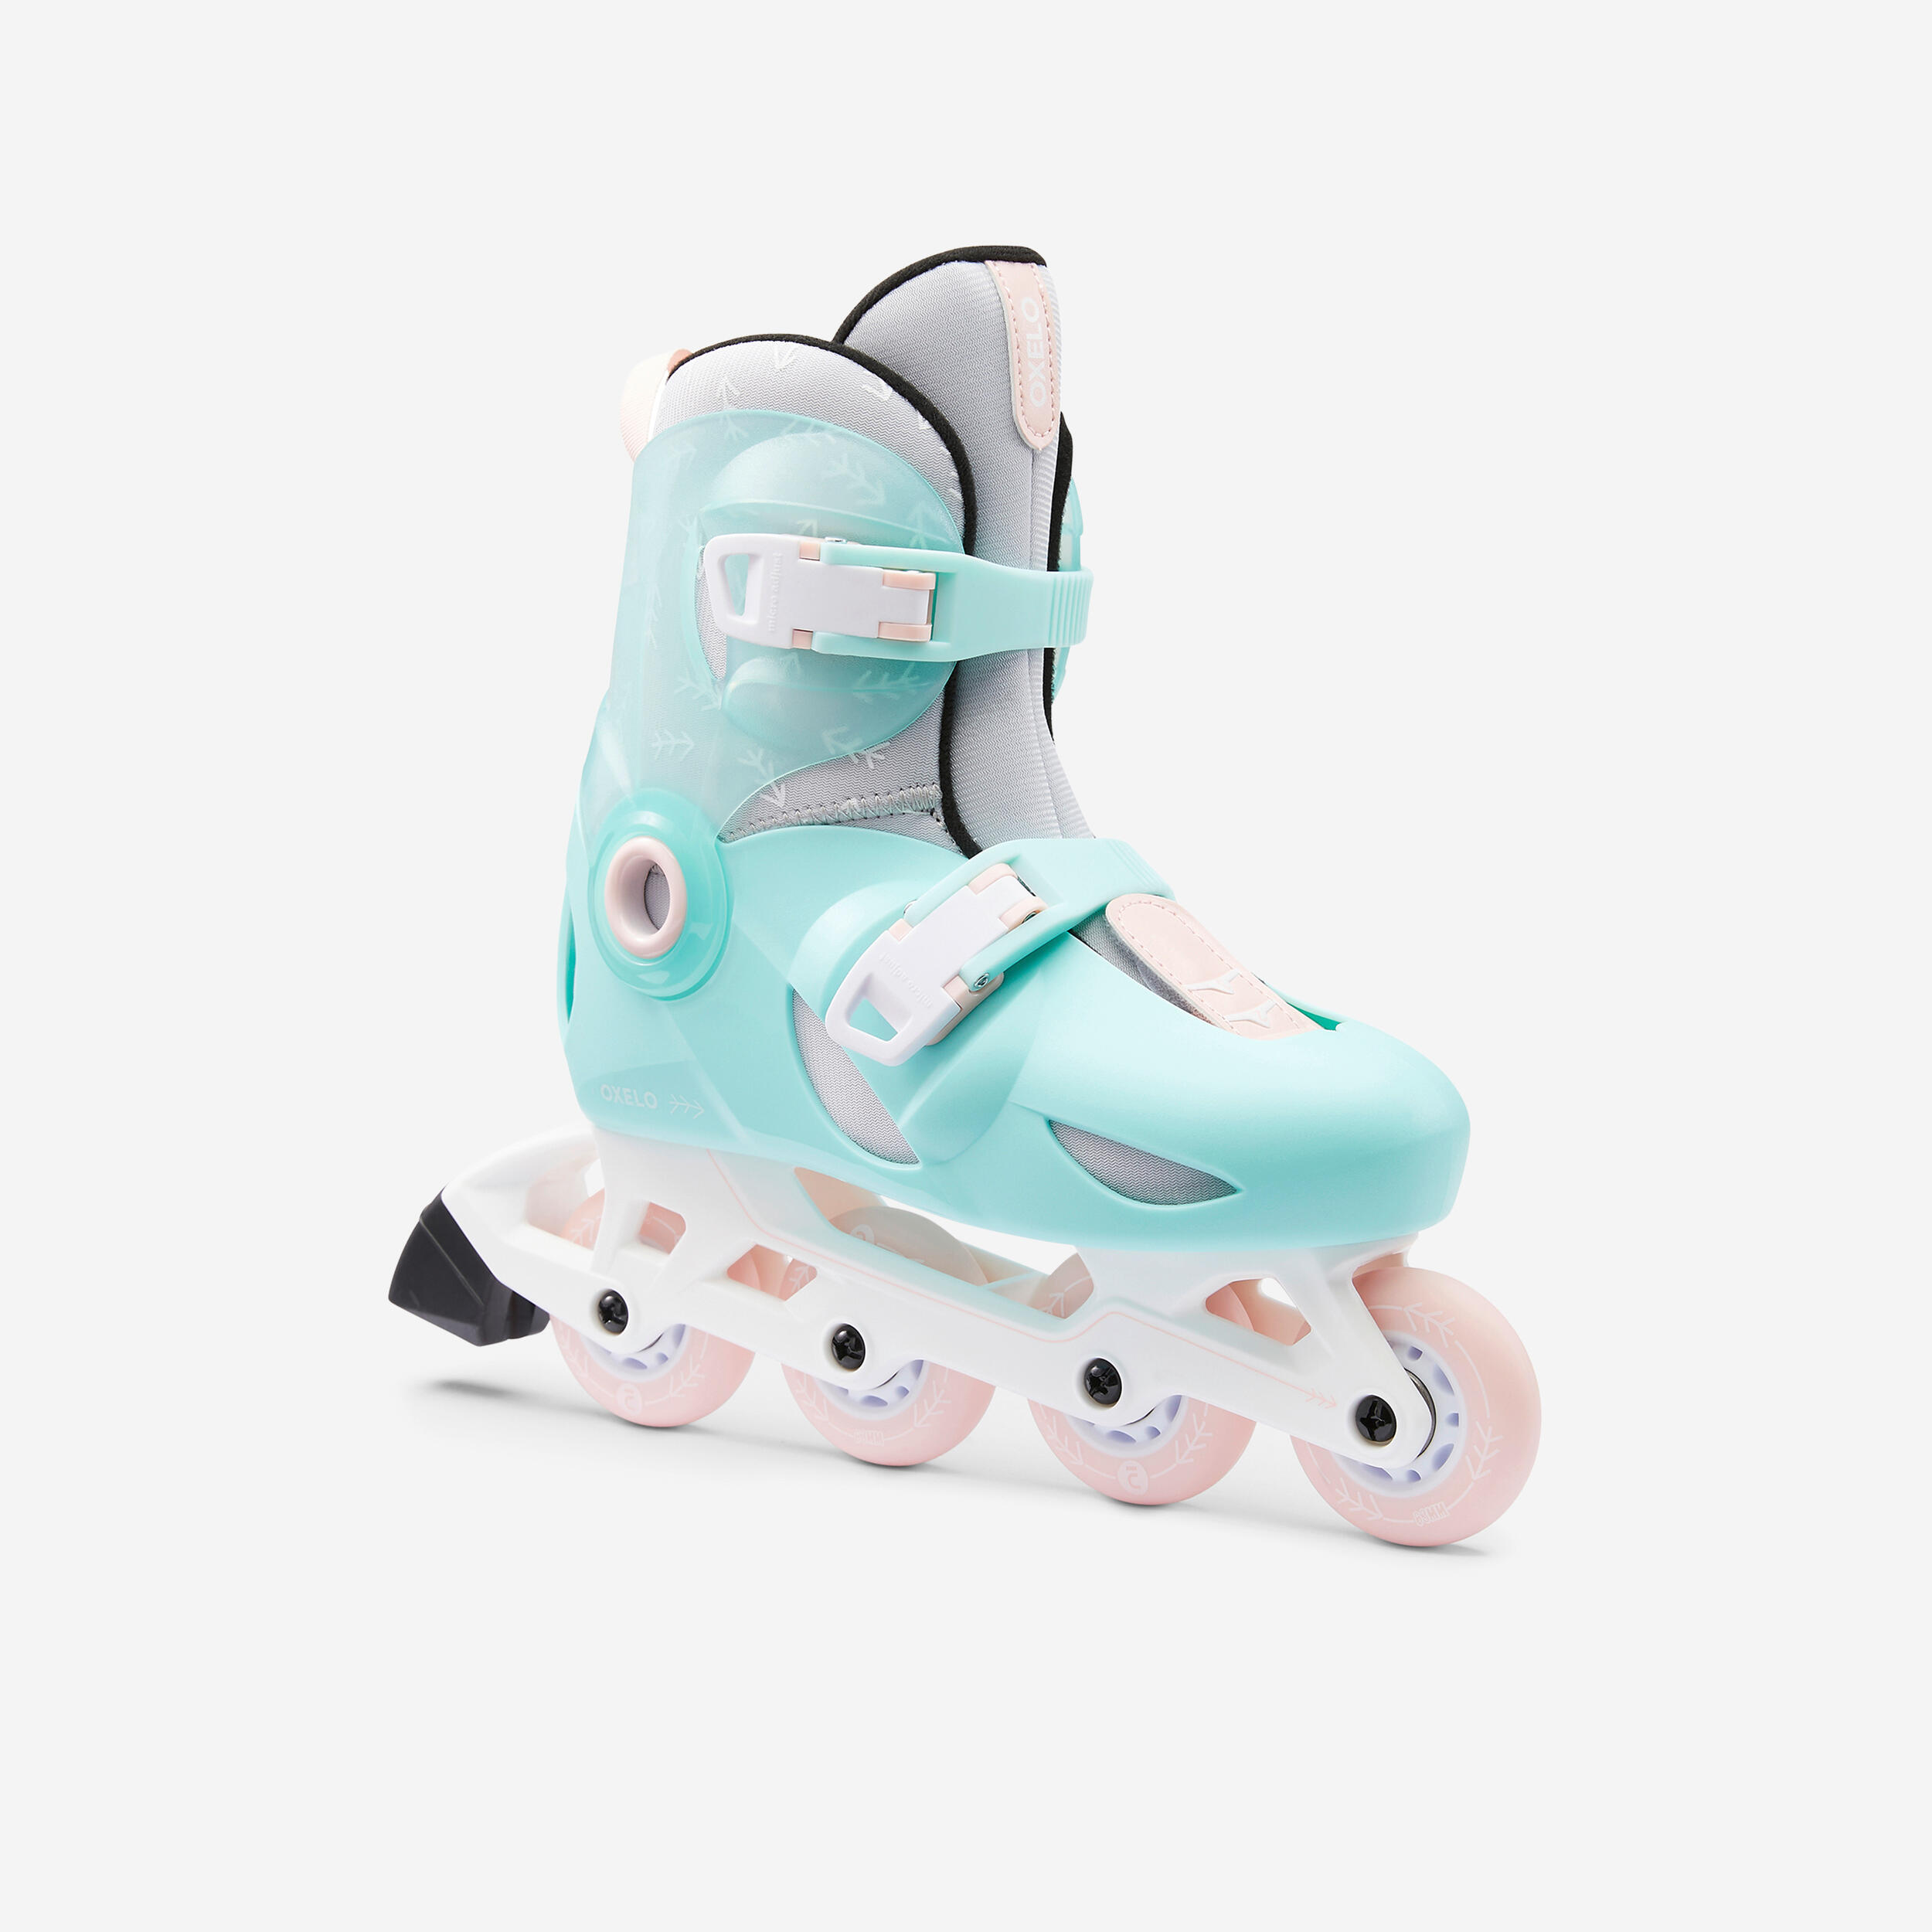 Lote dos pares de patines en linea infantil talla 26/28 (azul) y 30/32  (rosa) oxelo - VendeloAmazing